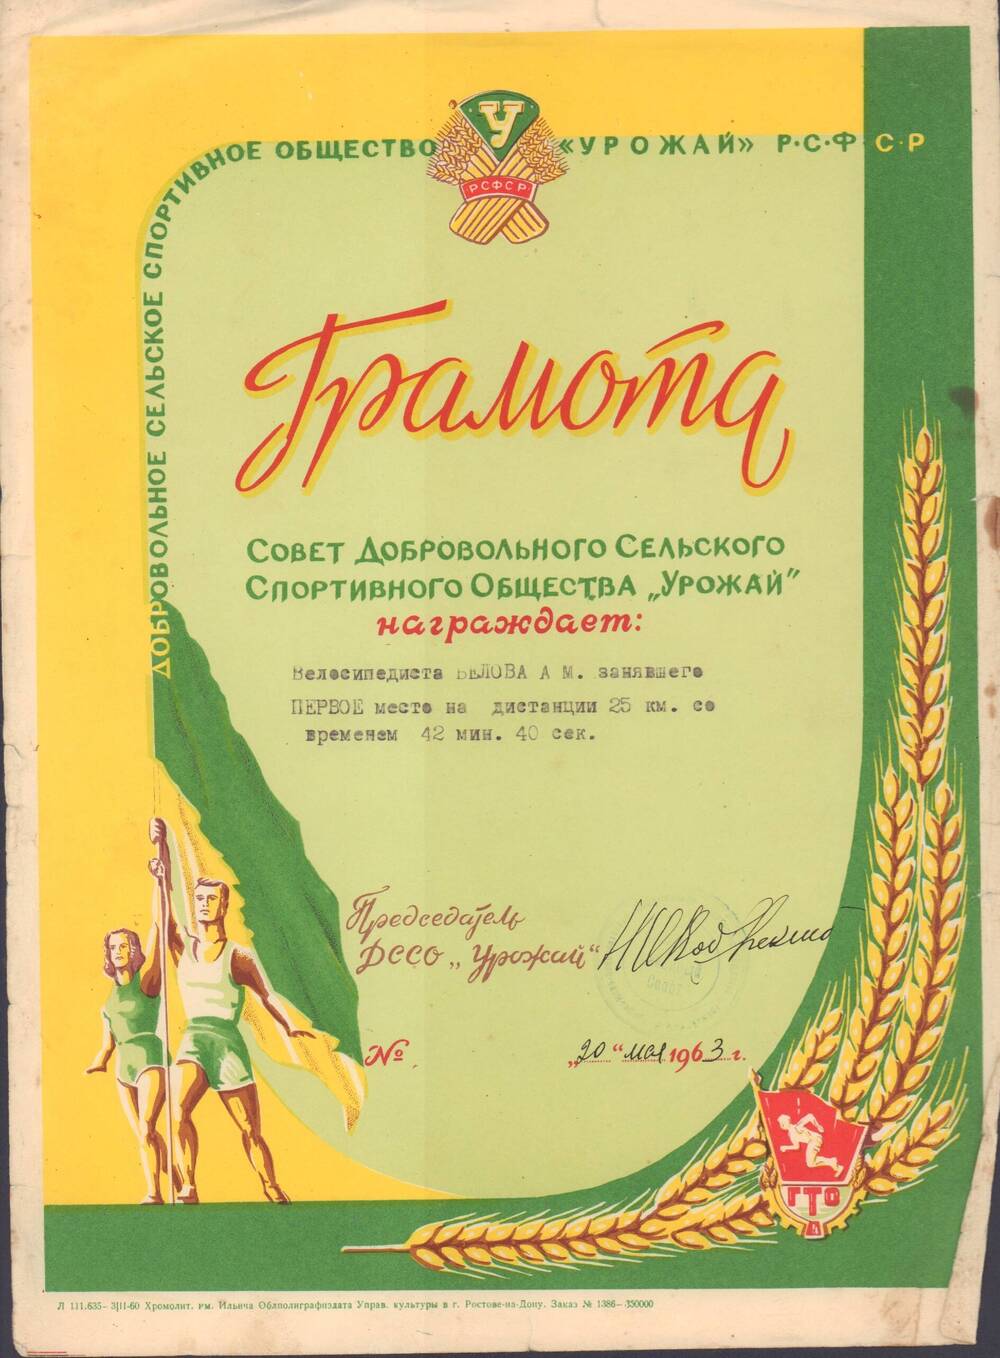 Грамота Белова А.М., Совет ДССО Урожай, 20 мая 1963 г.